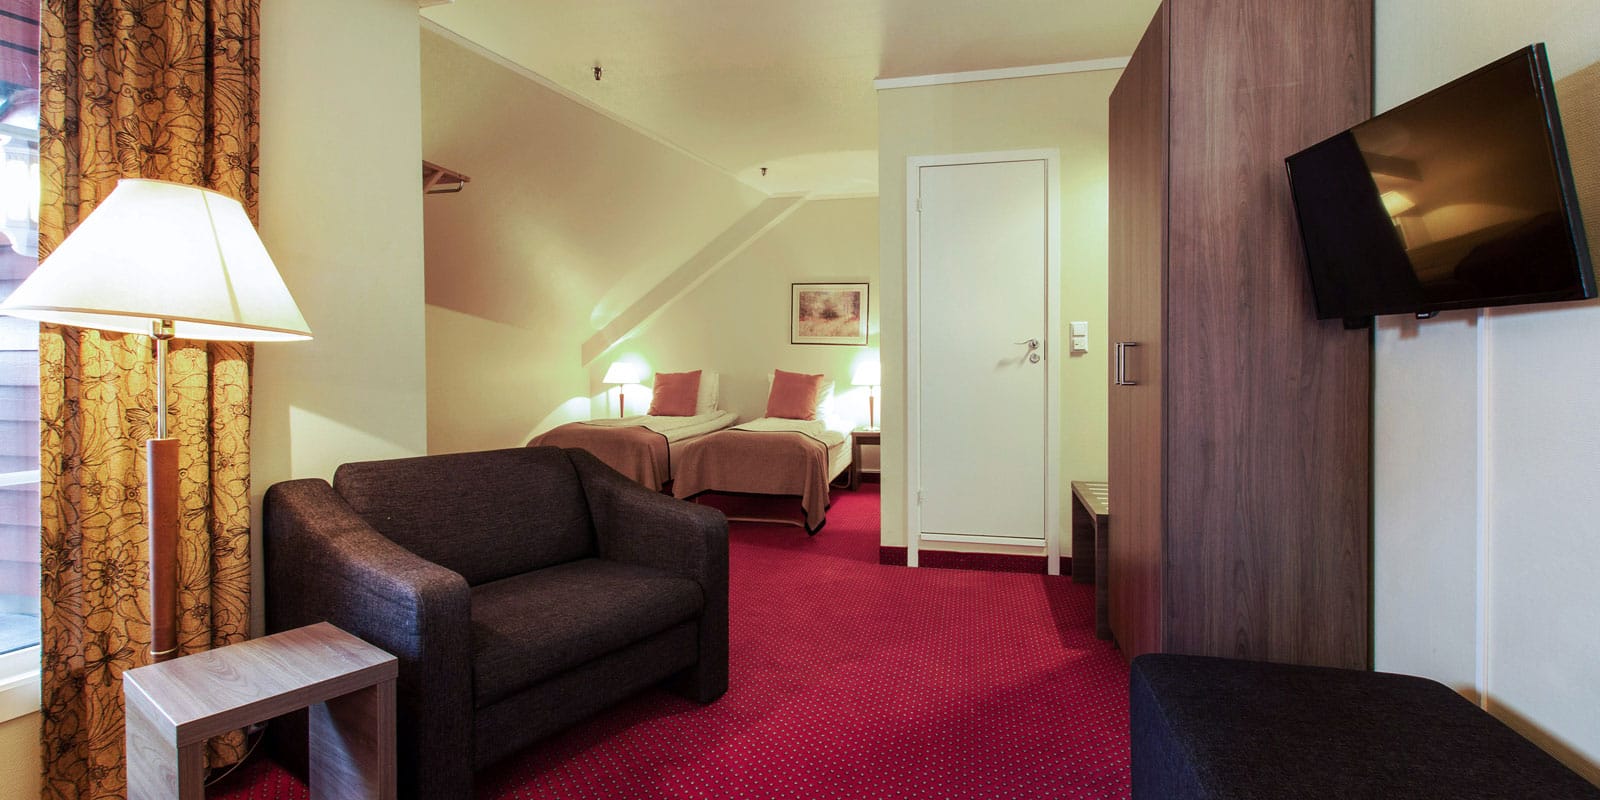 Säng i Standard Twin Room på Hotel Baronen